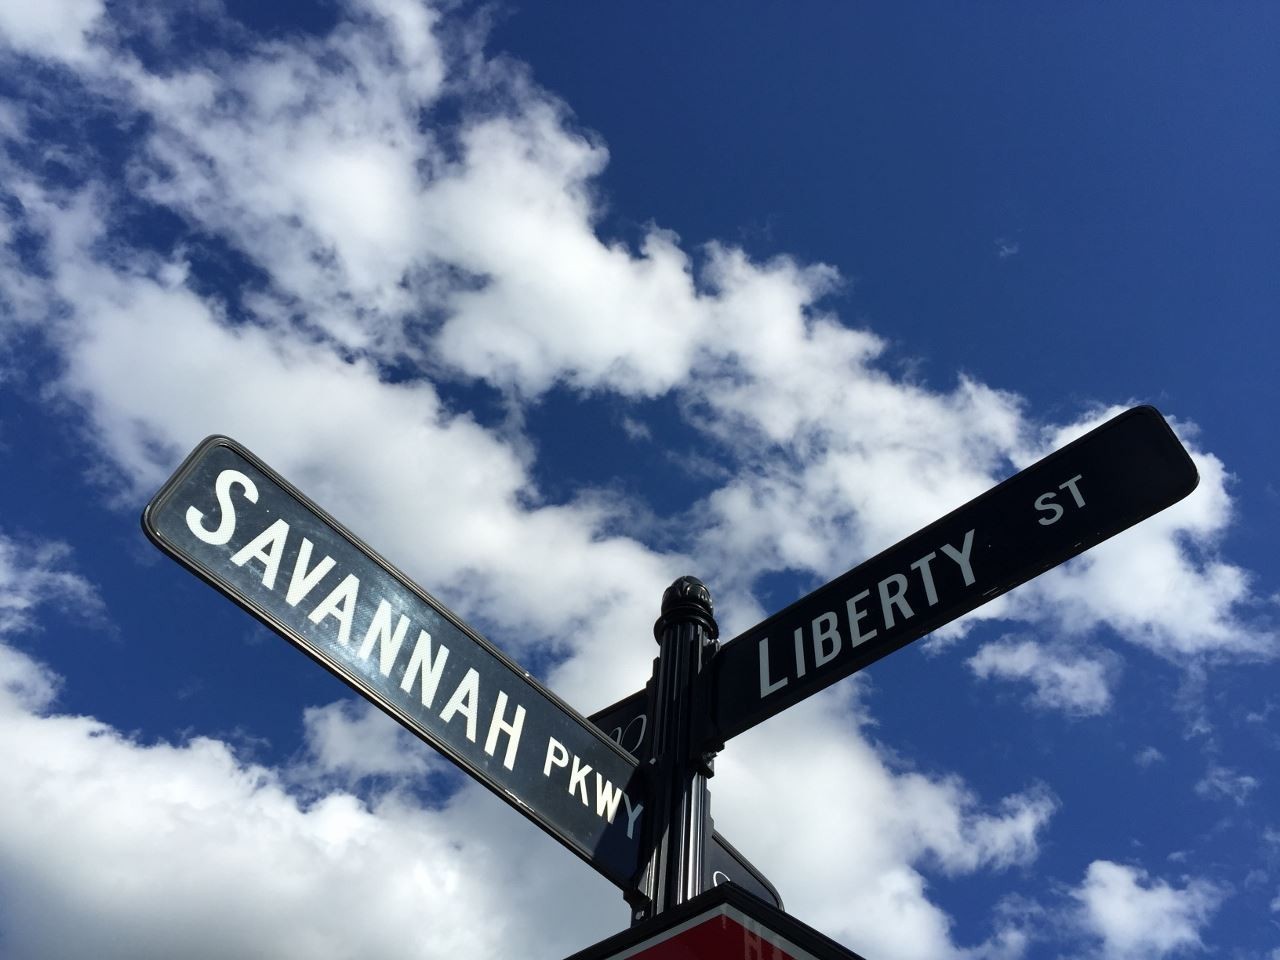 22. 101 Savannah